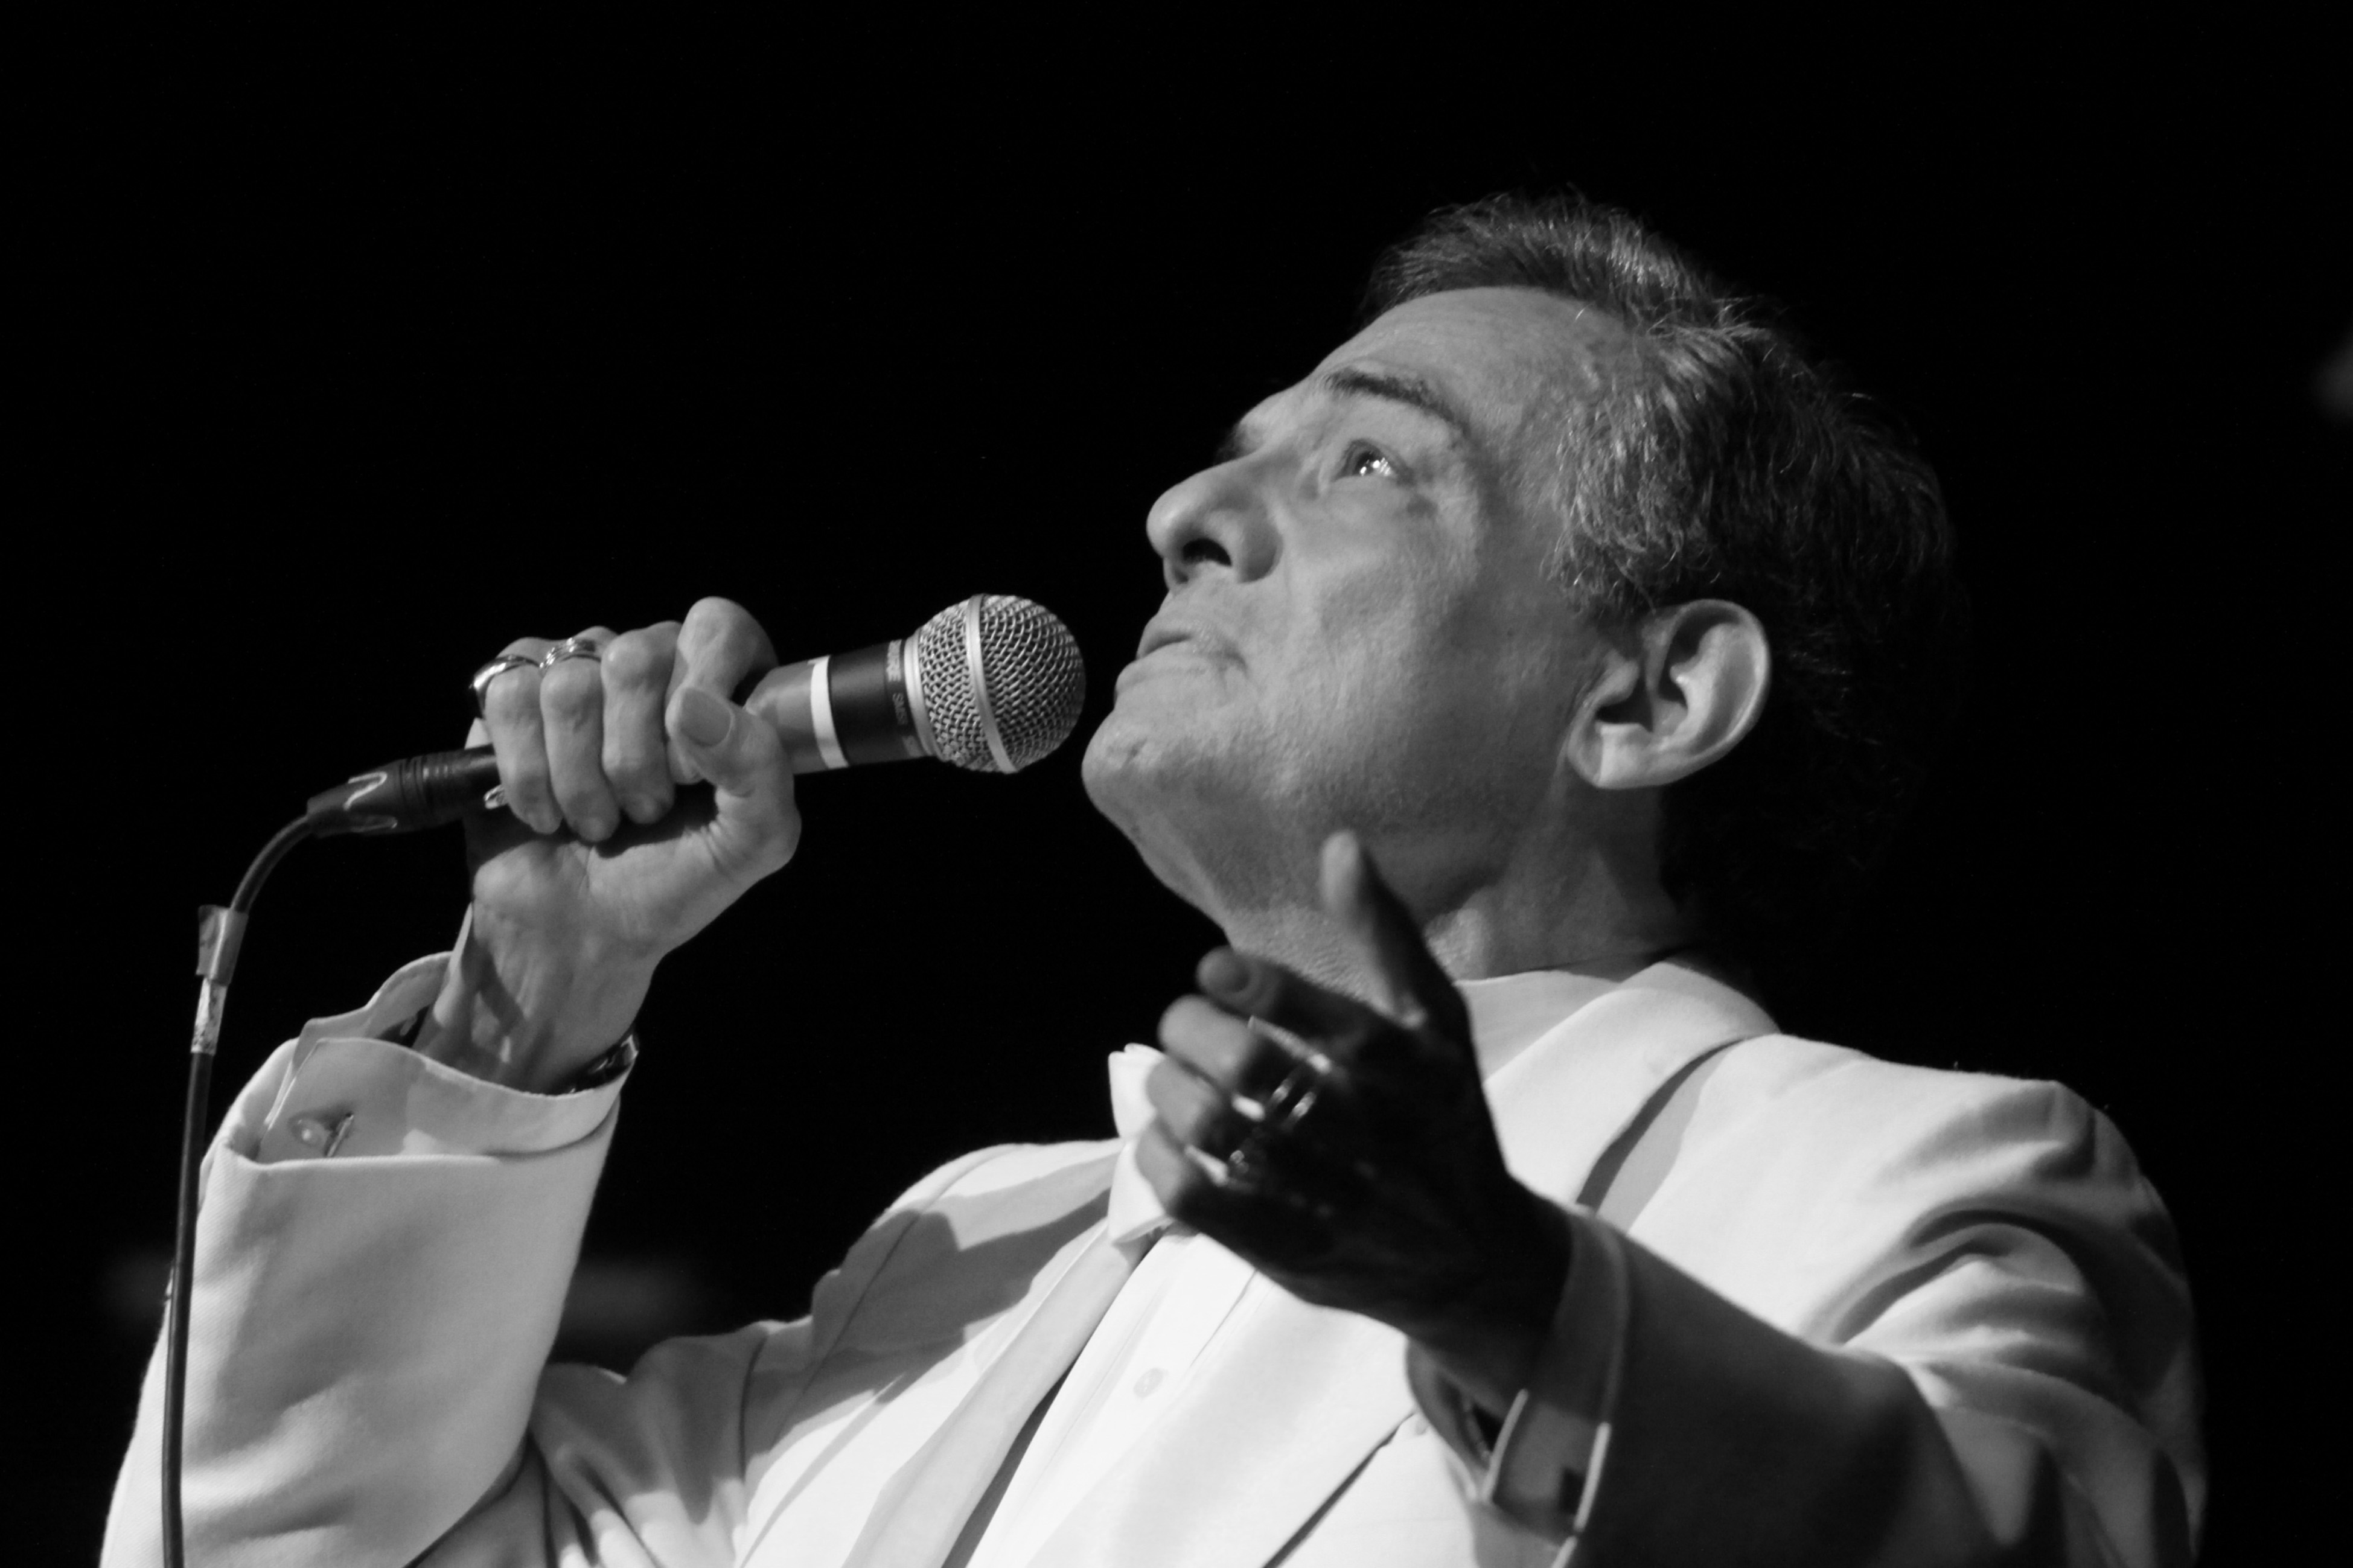 José José war einer der erfolgreichsten Latin-Pop-Künstler aller Zeiten. Der mexikanische Sänger starb am 28. September 2019 mit 71 Jahren, vermutlich an den Folgen seiner Krebserkrankung.